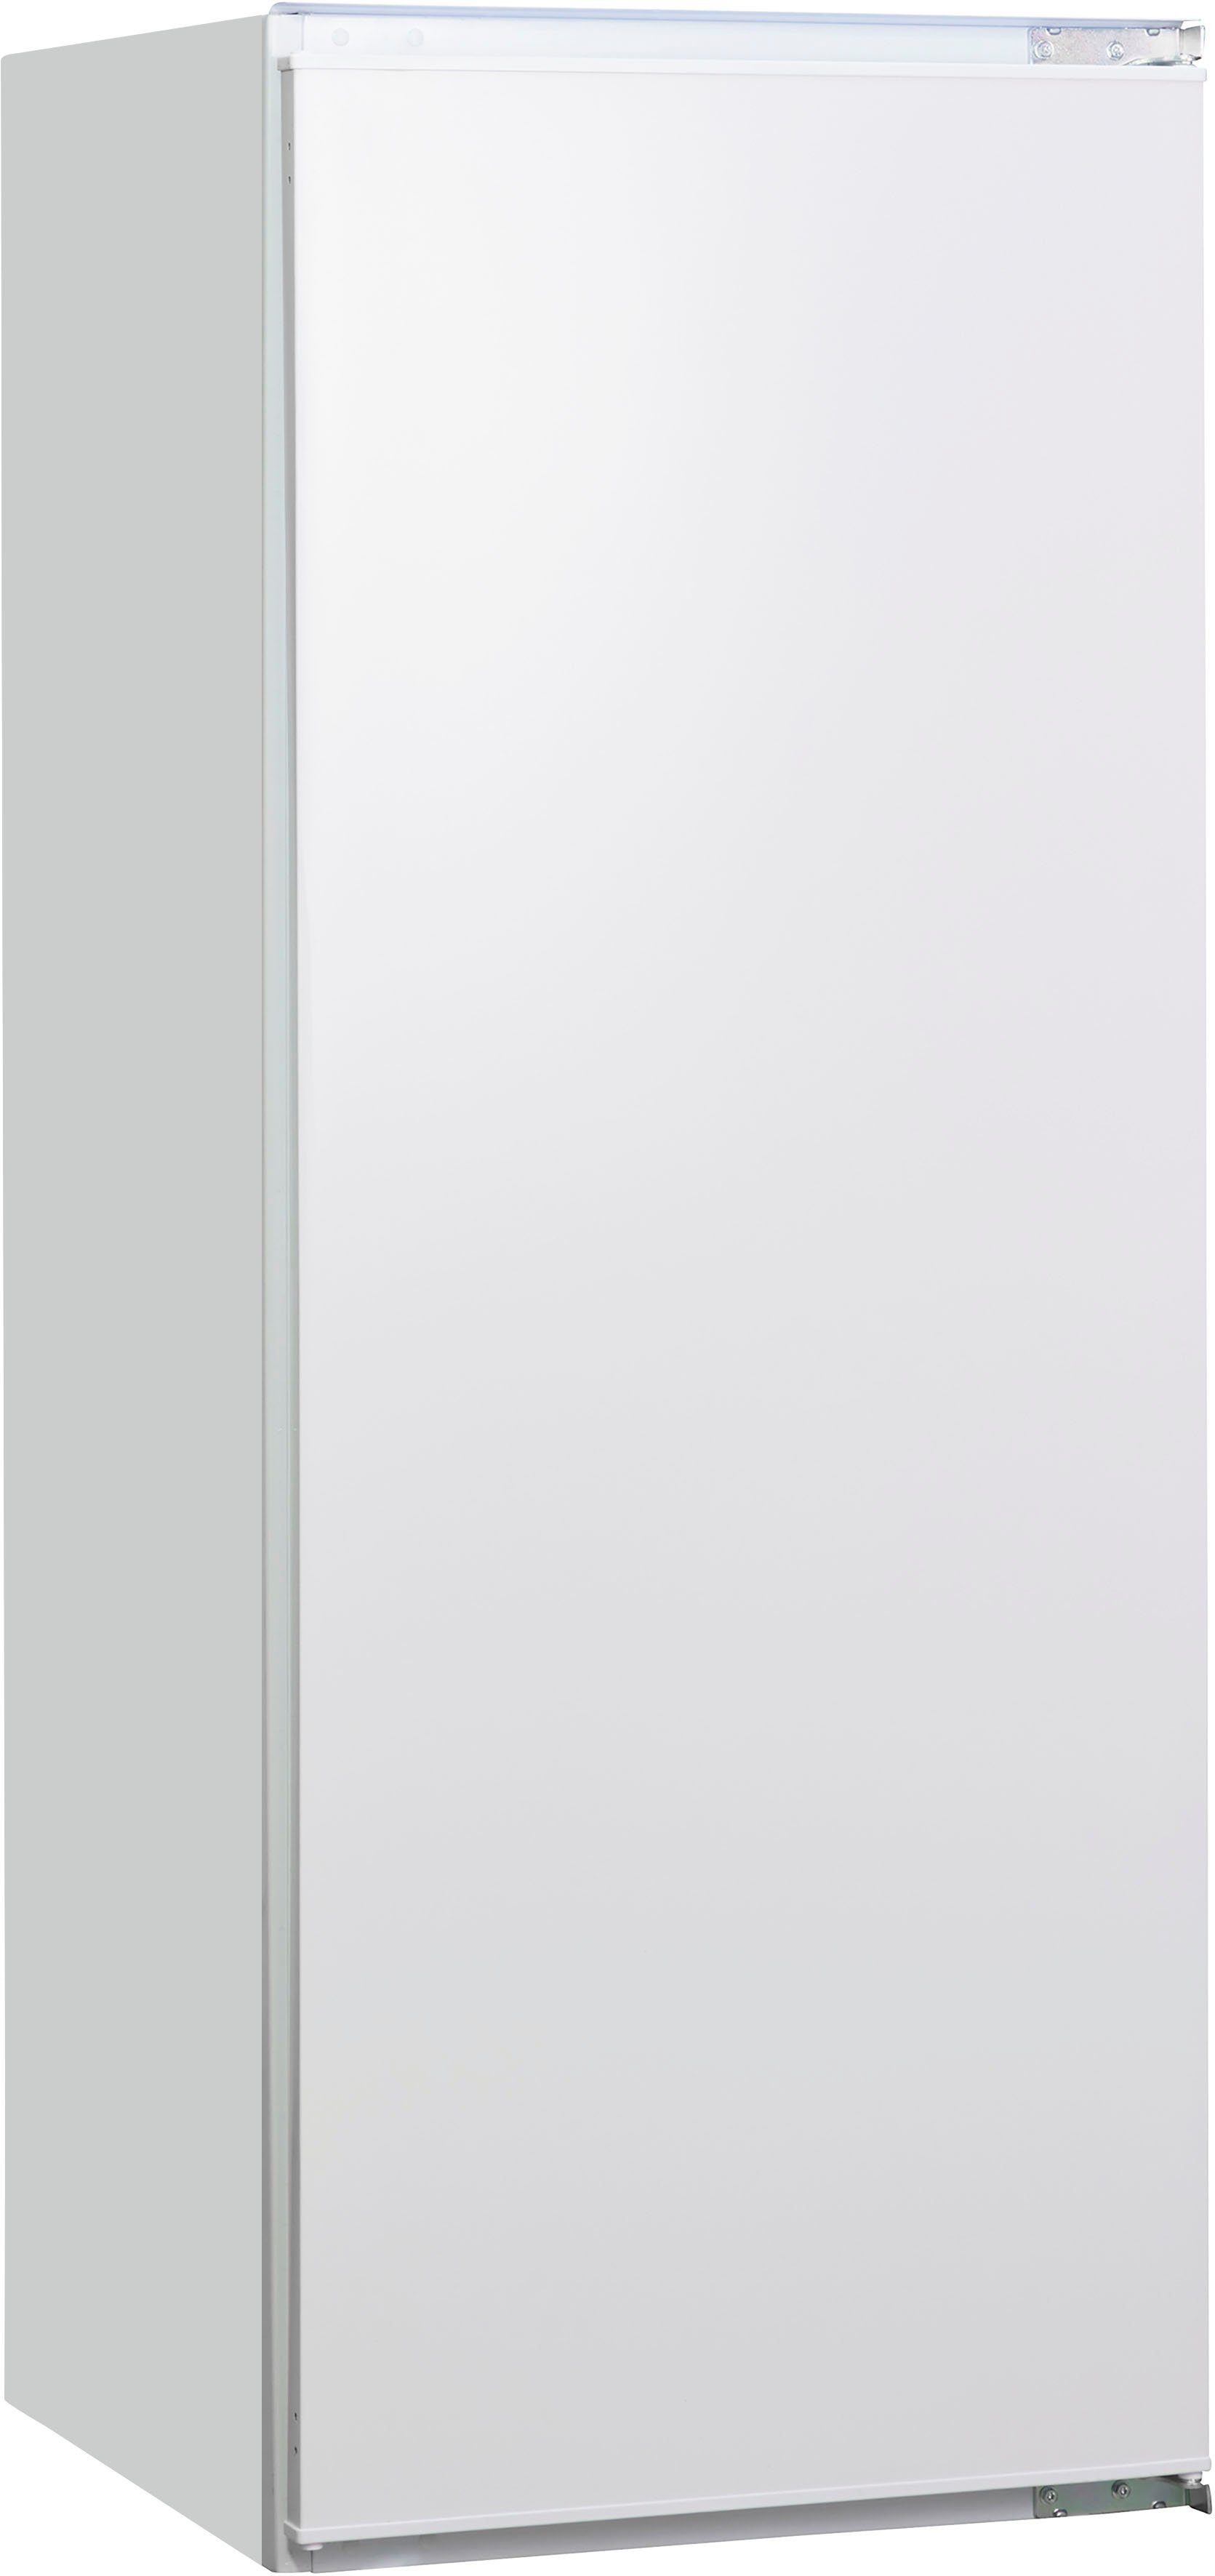 Amica Einbaukühlschrank EKSS 364 cm cm 54 breit hoch, 200, 139,7